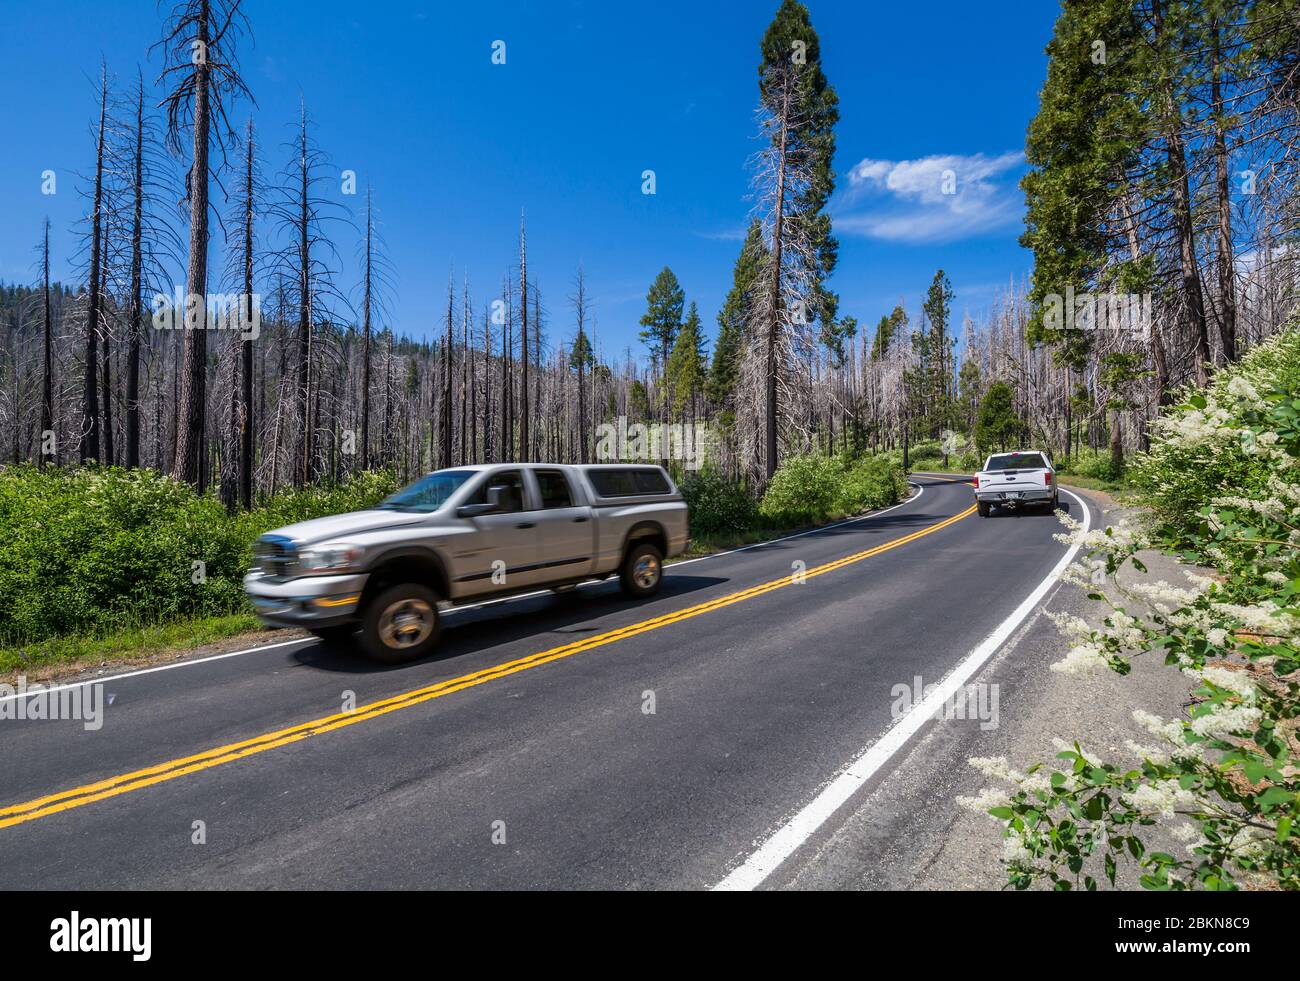 Route à travers la zone dévastée par les feux de forêt, parc national de Yosemite, site classé au patrimoine mondial de l'UNESCO, Californie, États-Unis, Amérique du Nord Banque D'Images